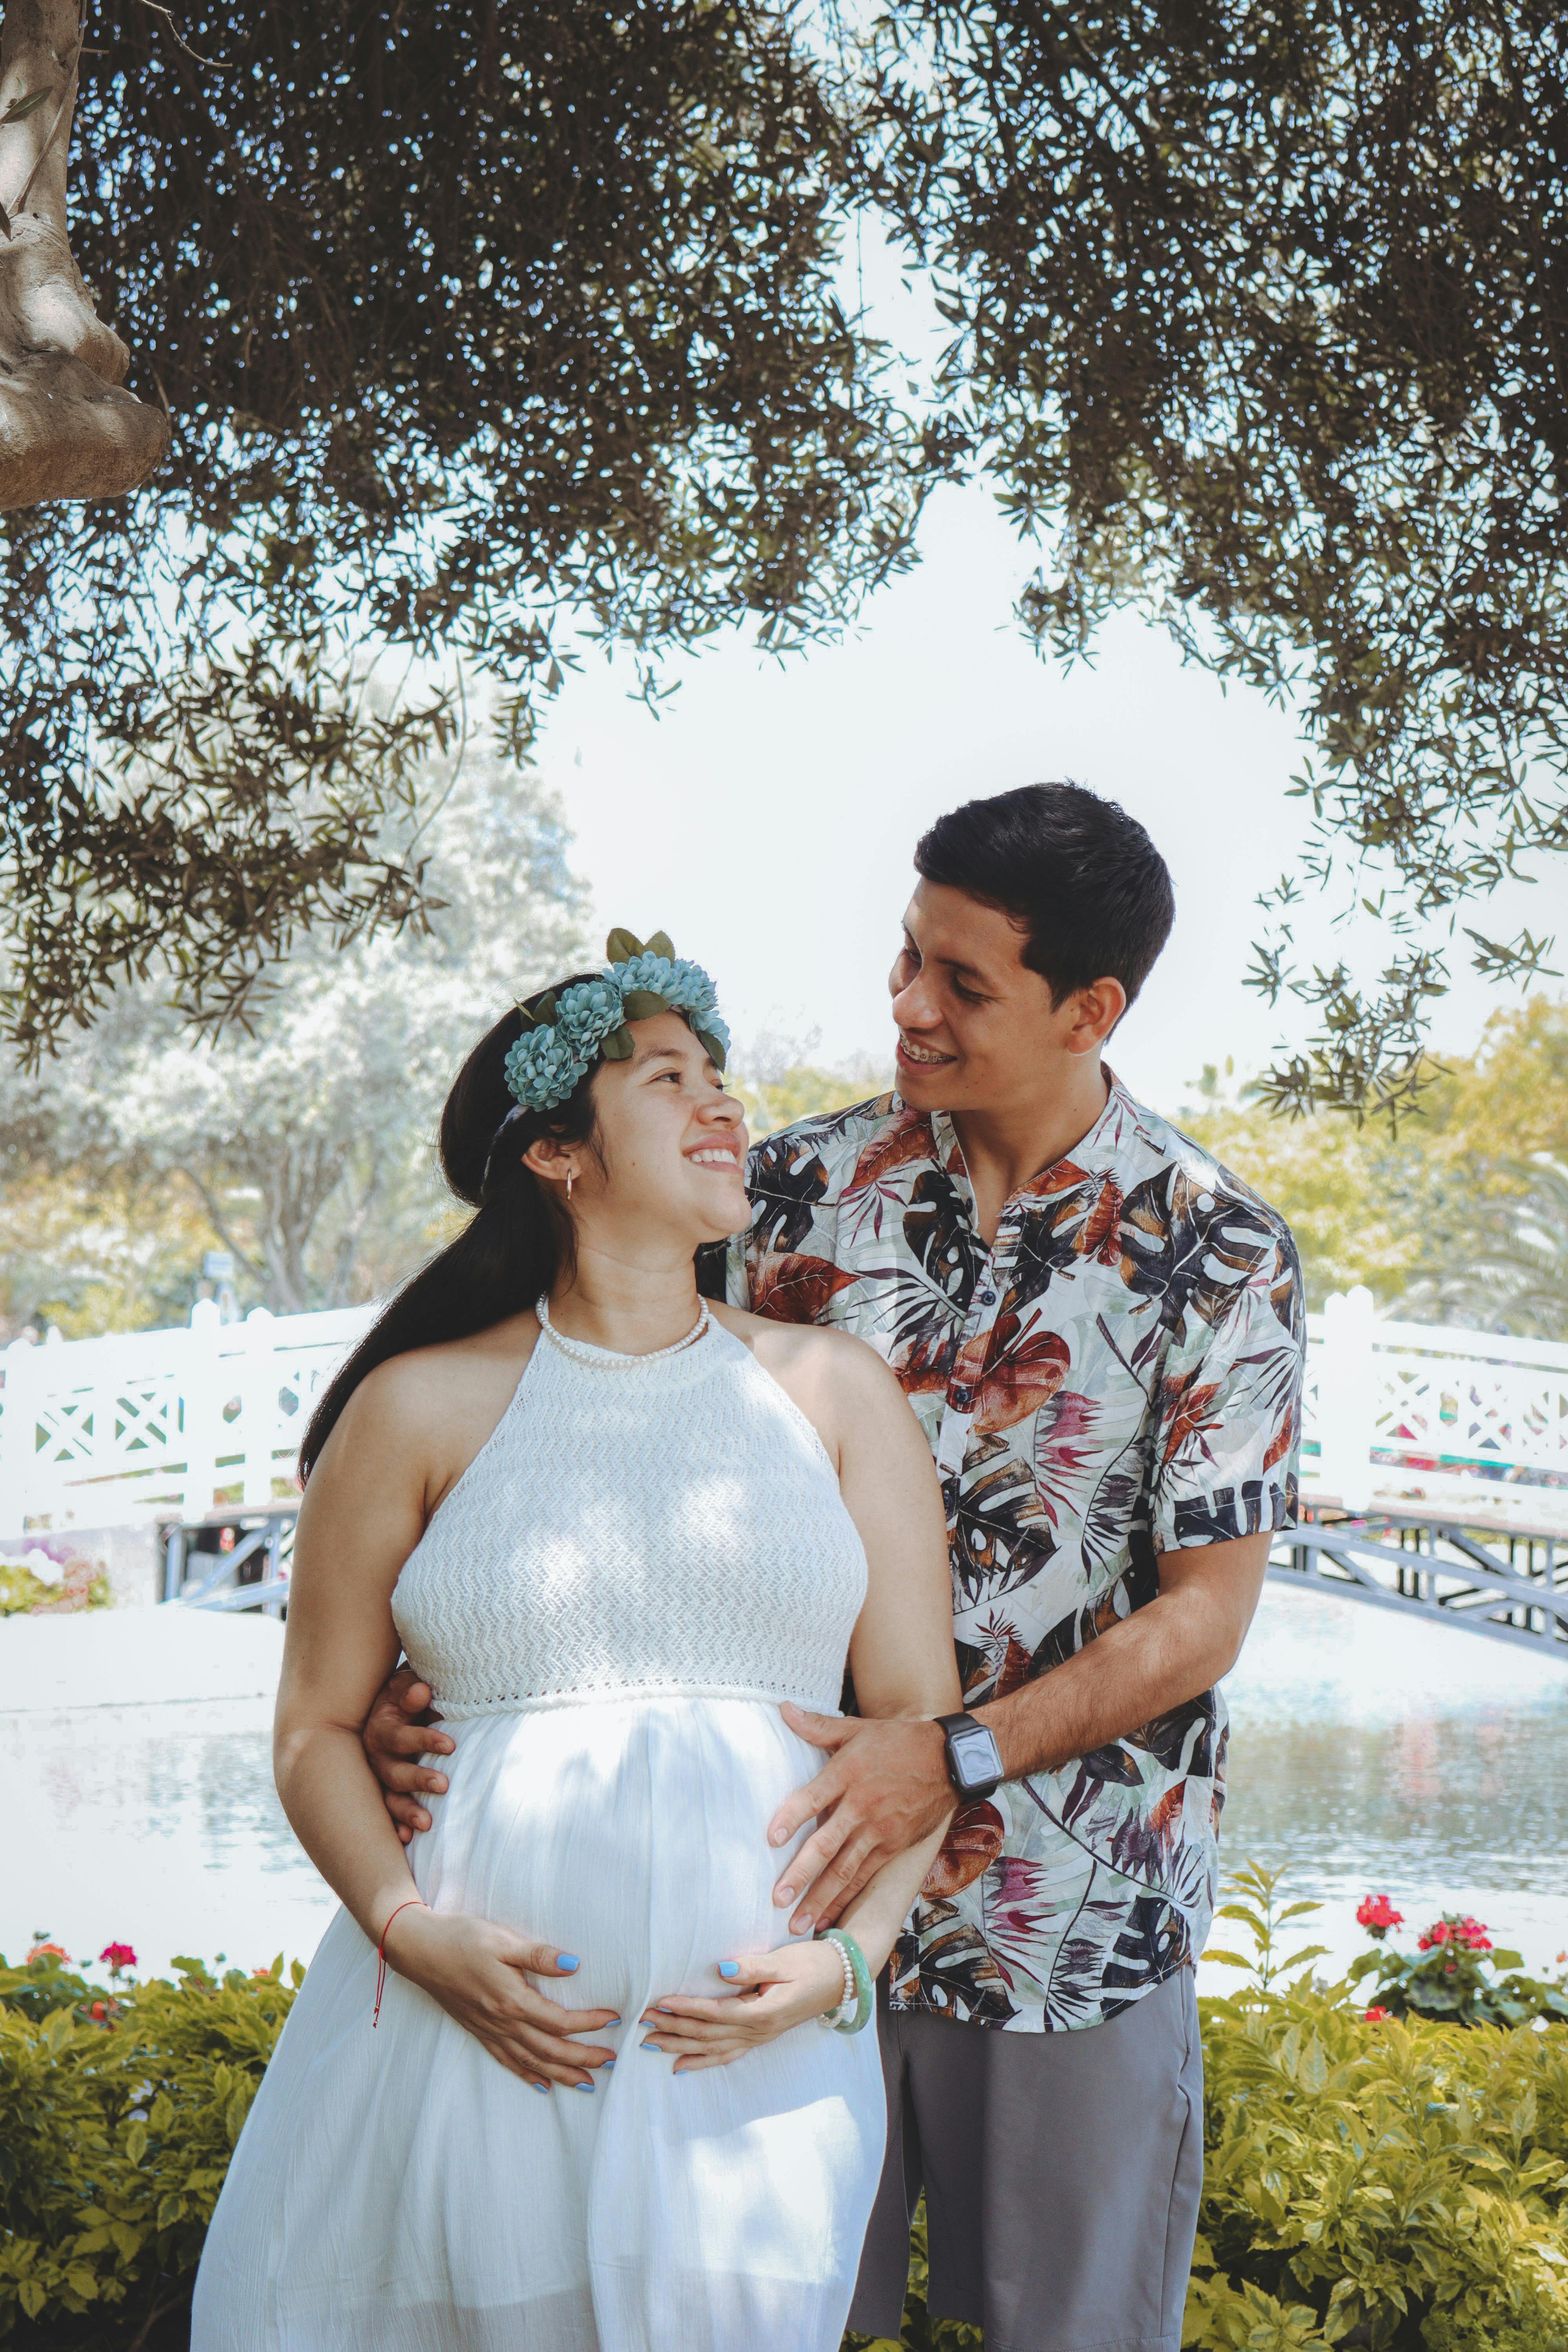 Eine schwangere Frau posiert mit ihrem Partner | Quelle: Pexels